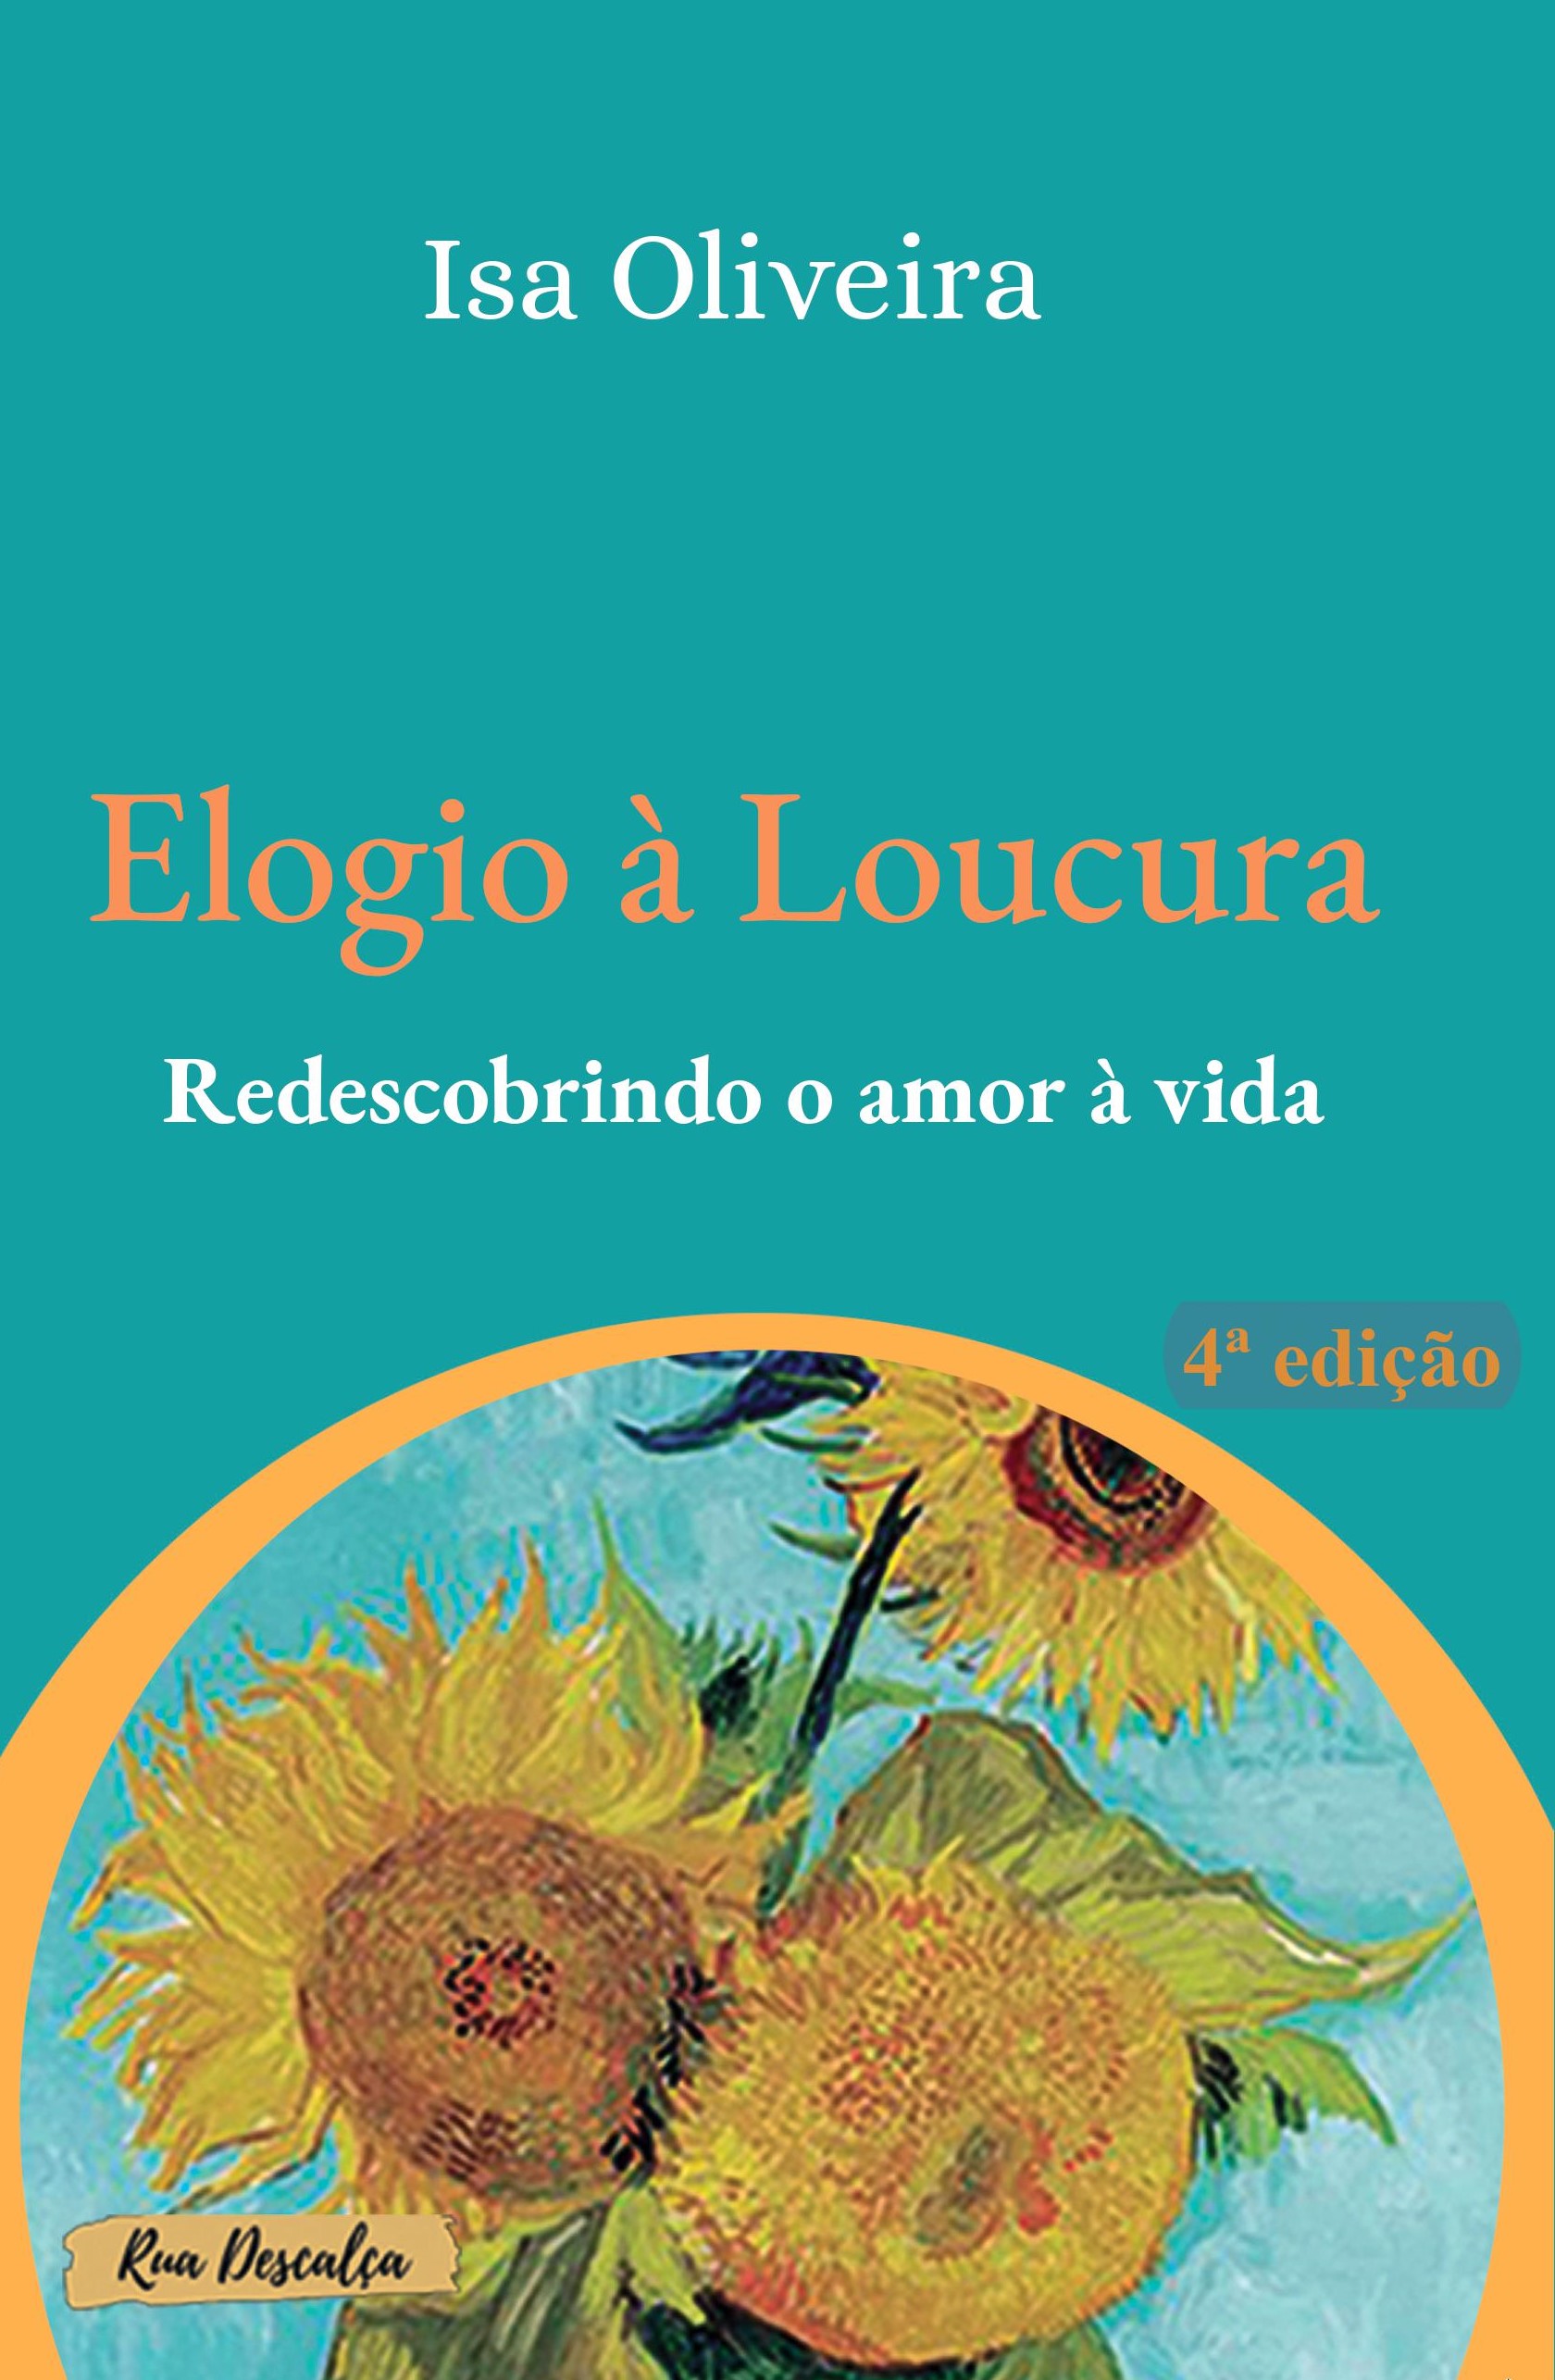 Capa do livro "Elogio à loucura", de Isa Oliveira, pela Editora Uiclap.